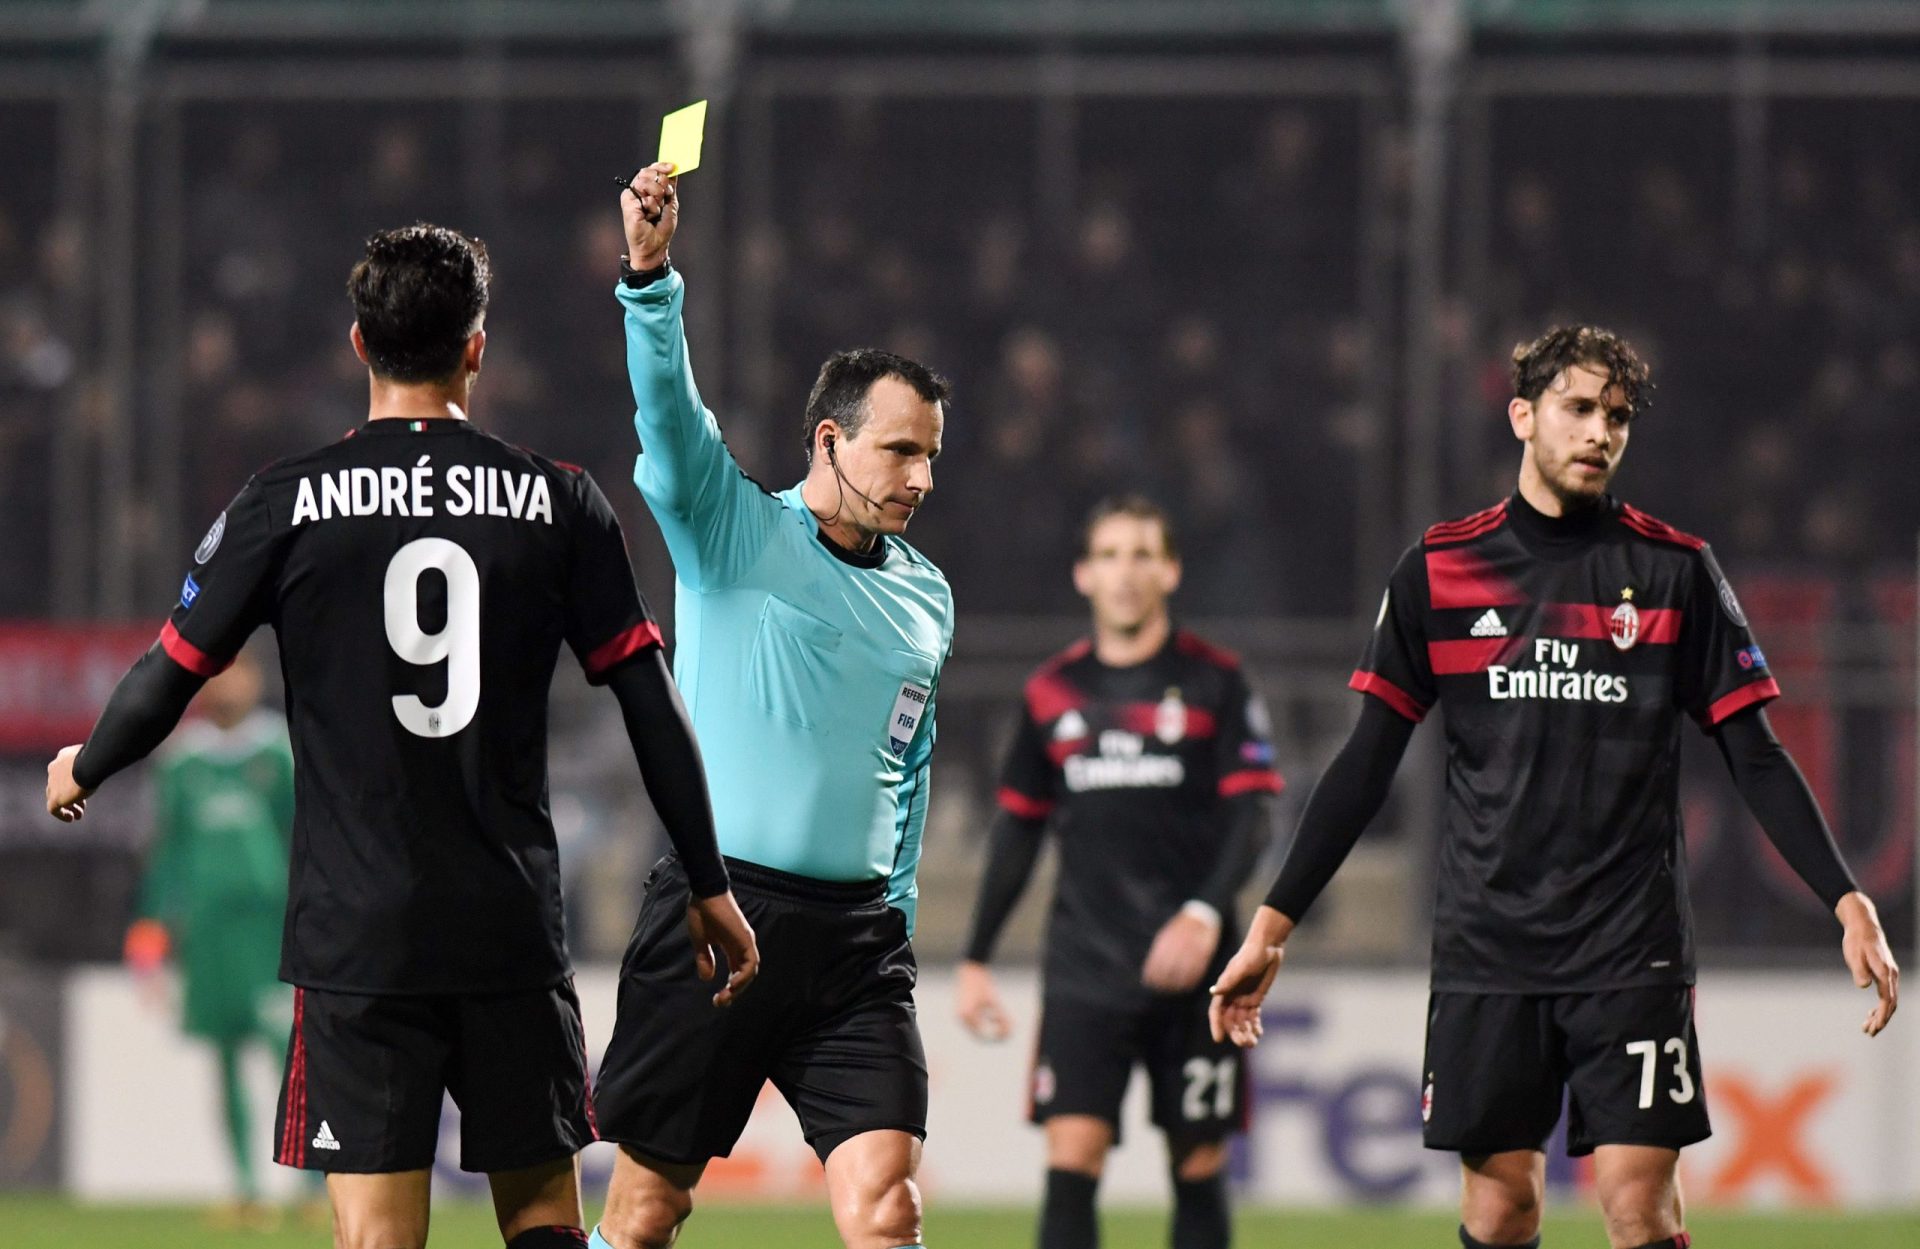 Gattuso repreende André Silva: “Quando jogas com a camisola do Milan tens de fazer mais”